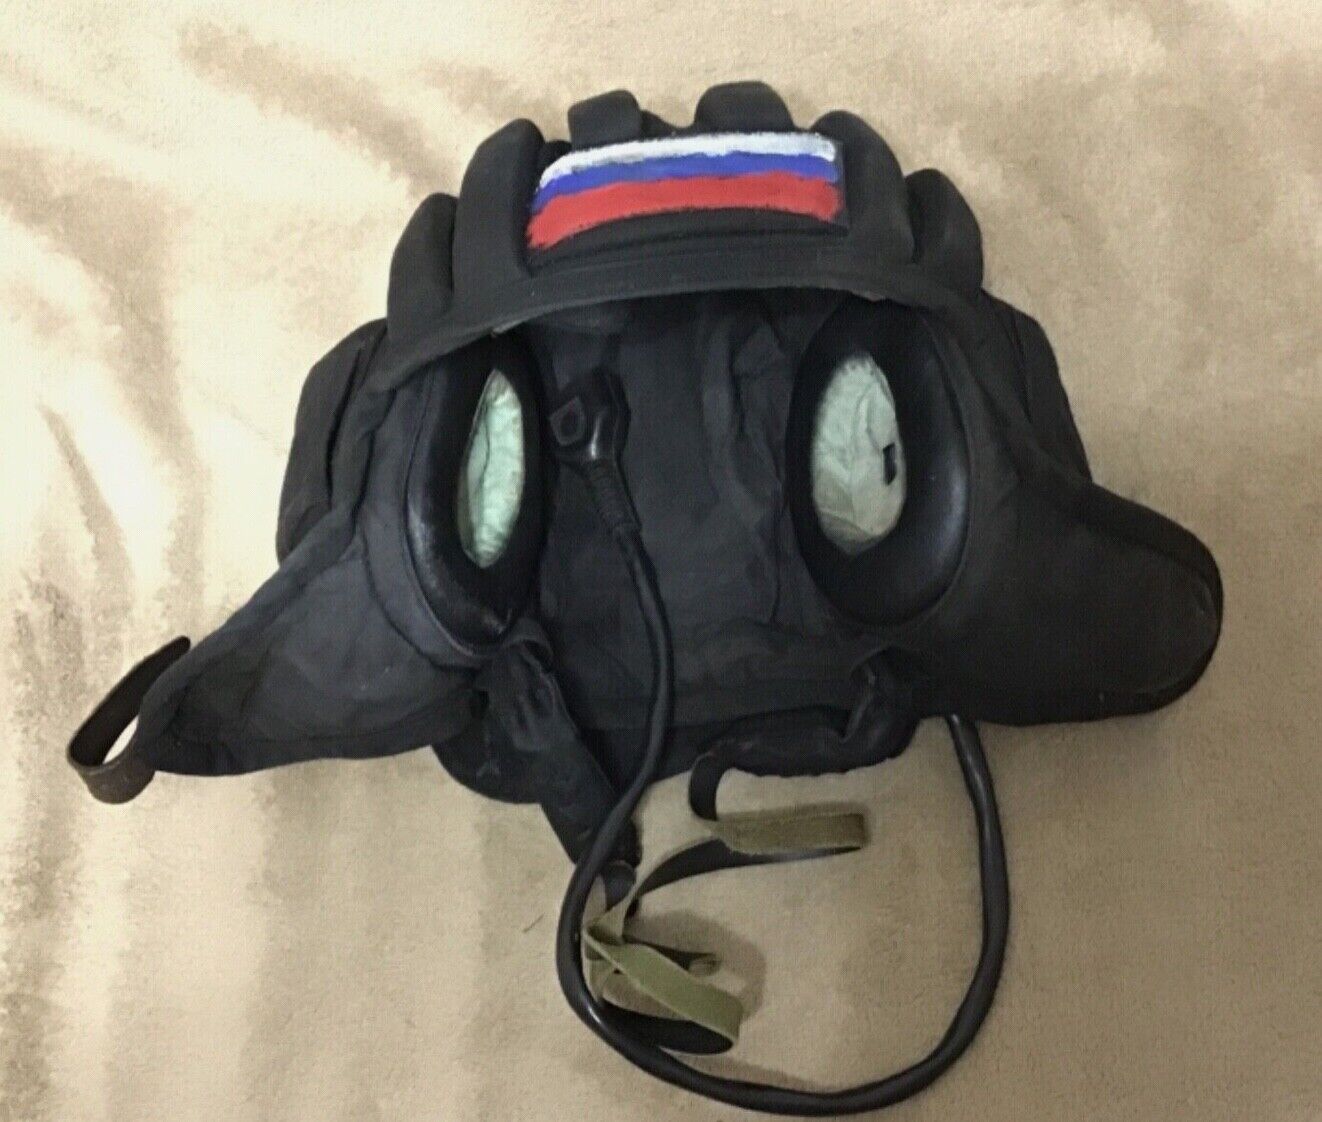 combat tank helmet of the occupier (RF). War in Ukraine